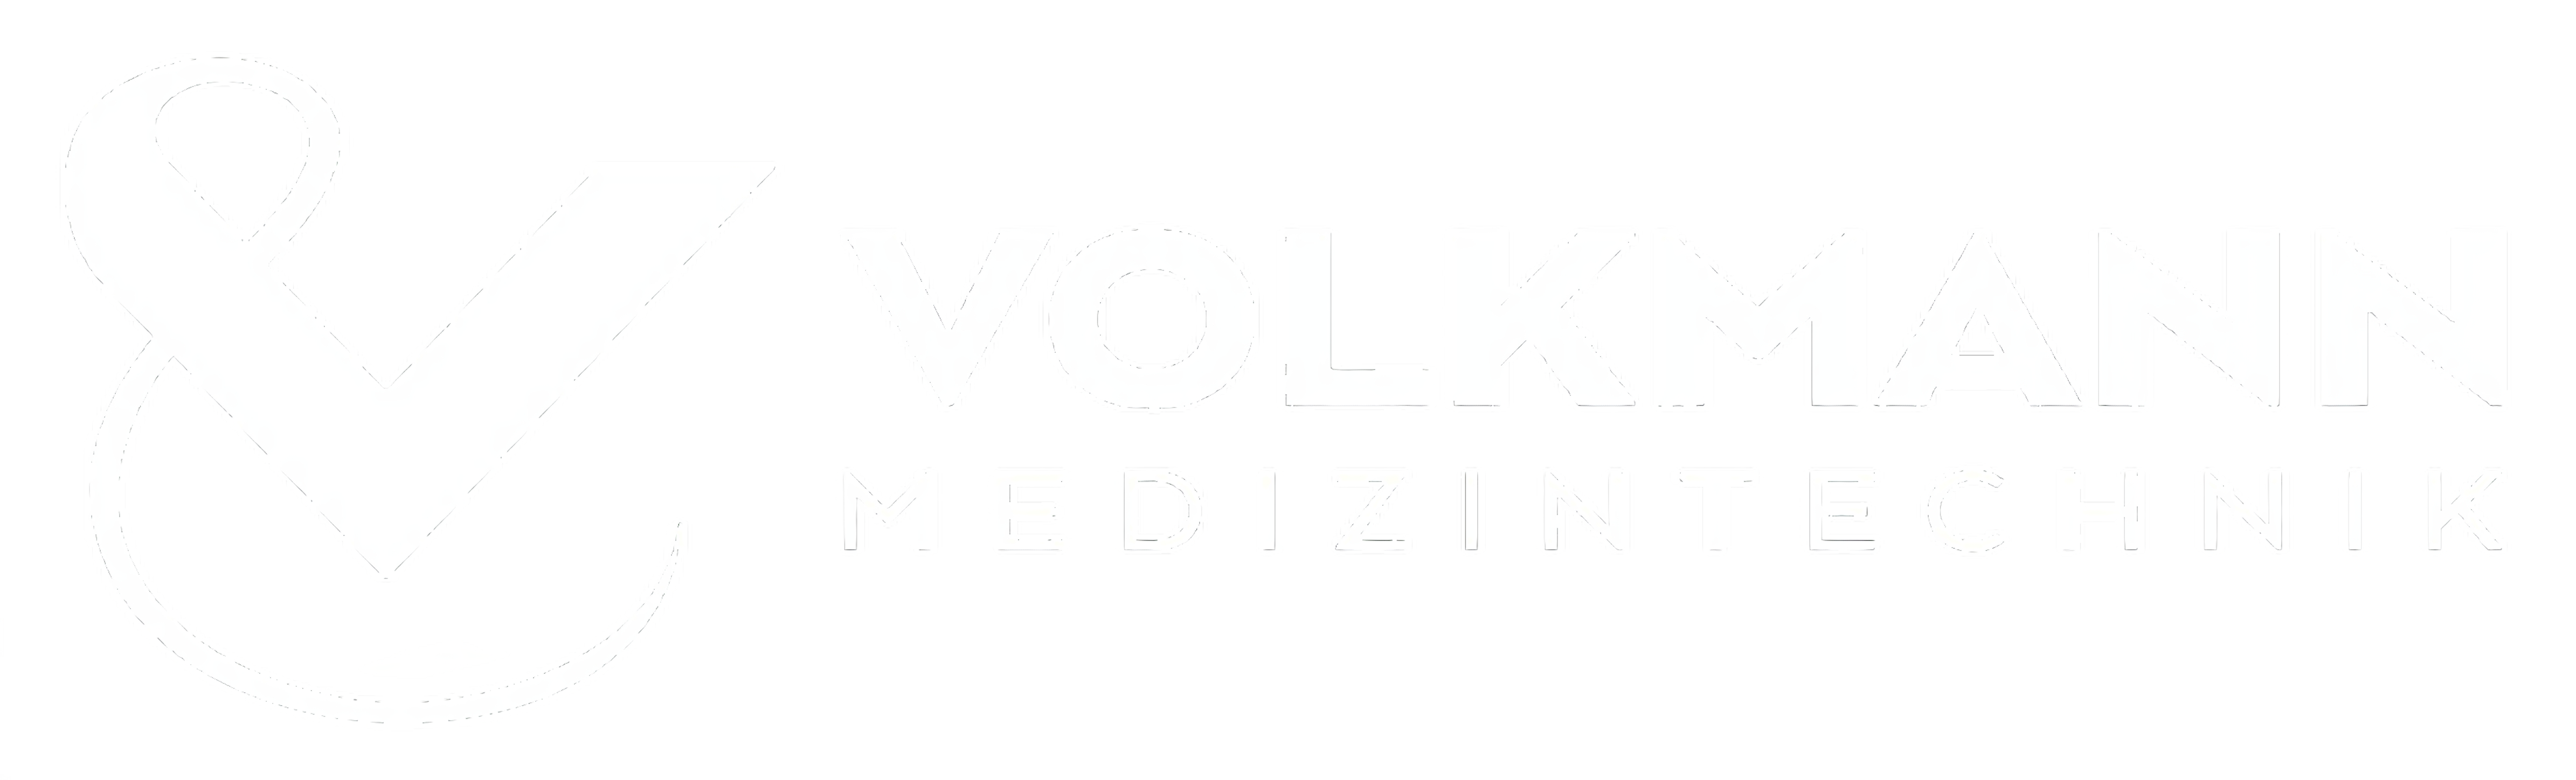 Volkmann MedizinTechnik GmbH